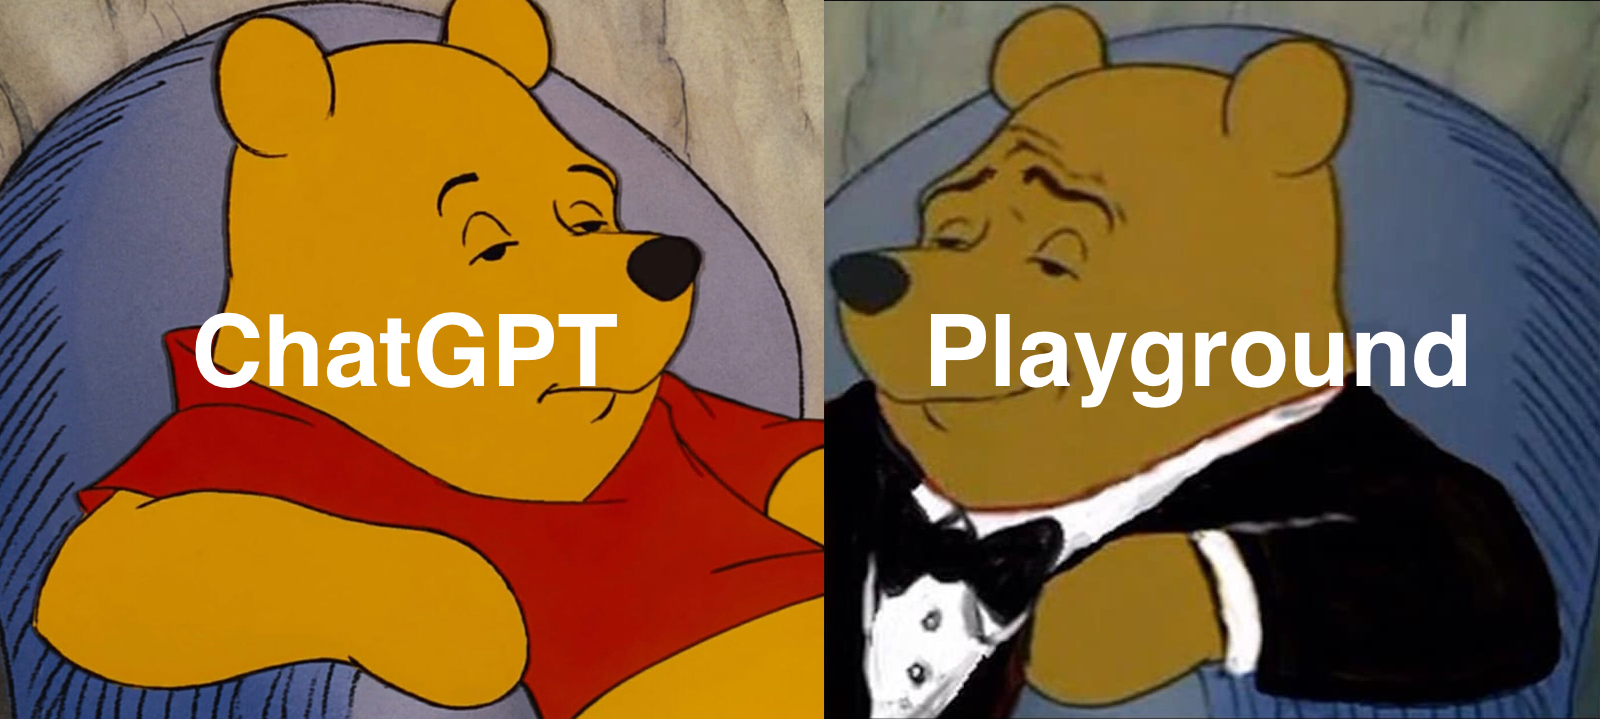 ChatGPT vs Playground